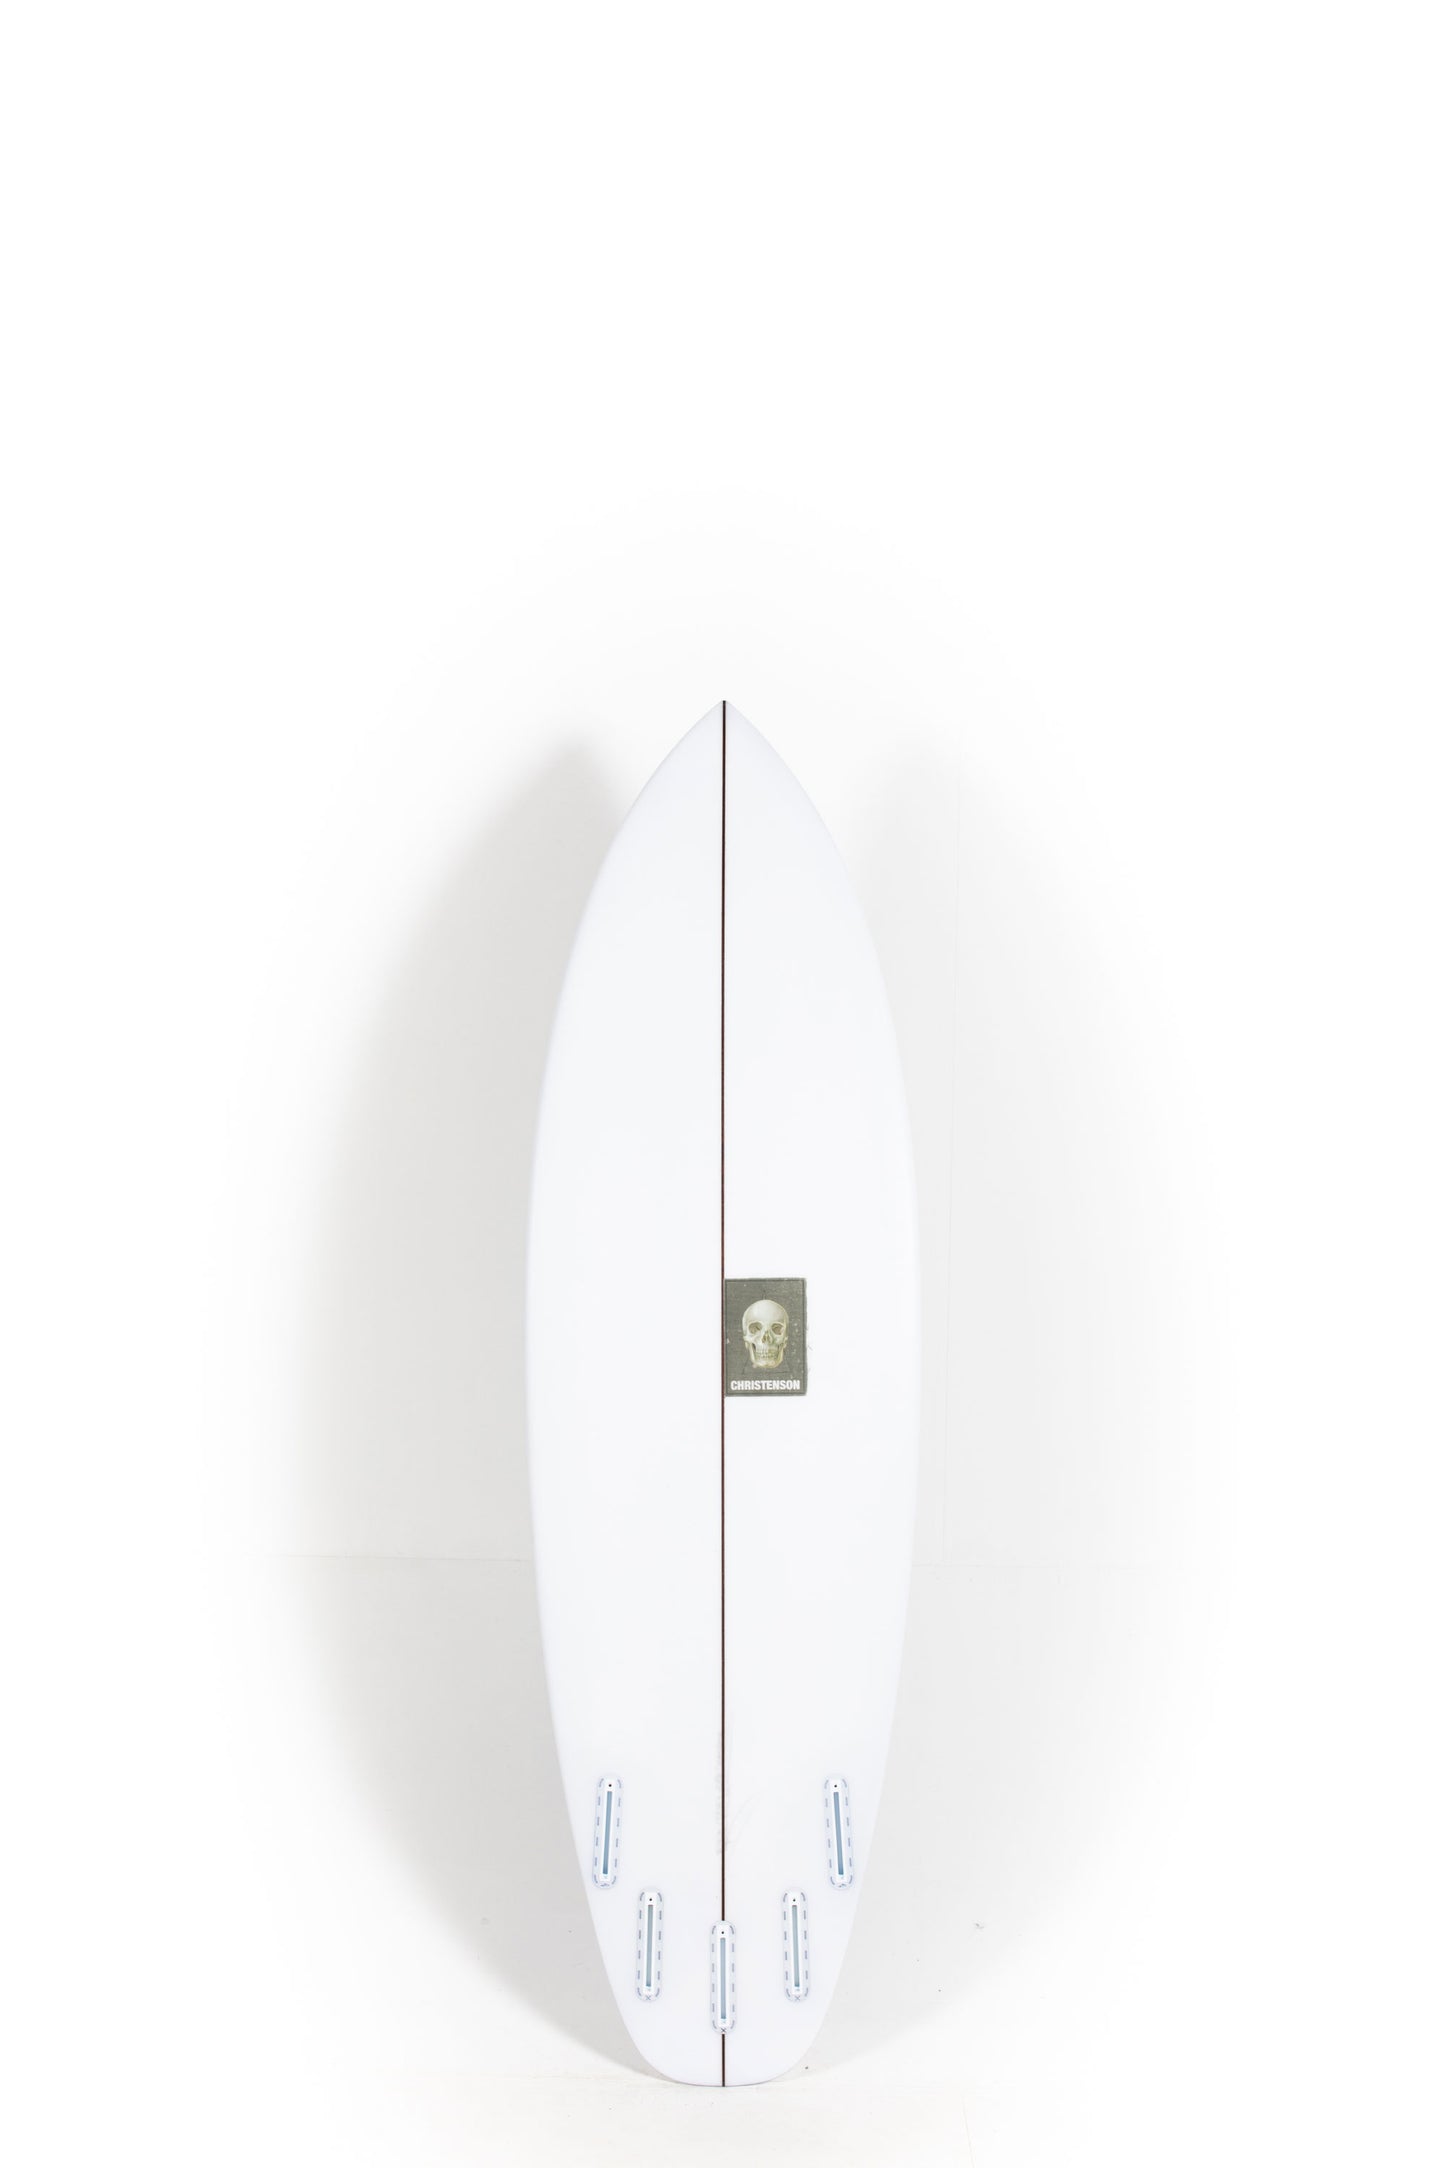 Pukas Surf Shop - Christenson Surfboard  - SURFER ROSA - 5'10” x 19 3/4 x 2 7/16 - CX05000